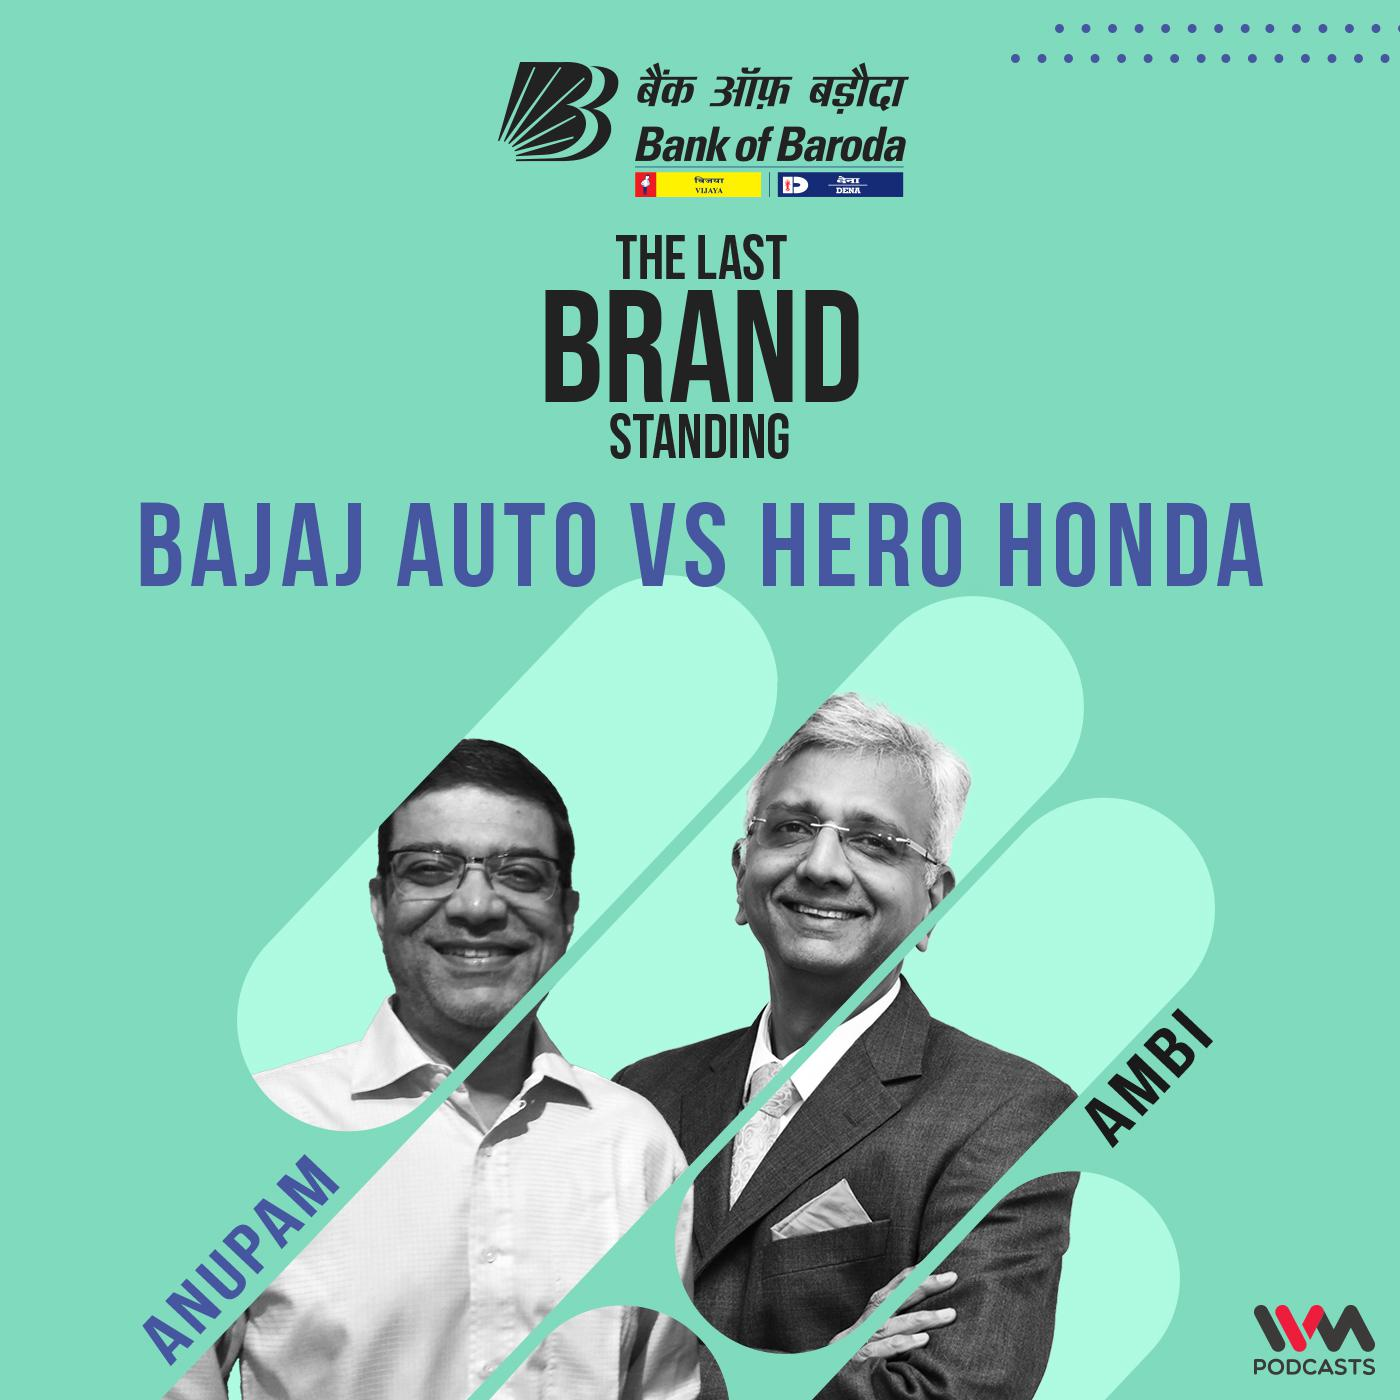 Bajaj Auto vs Hero Honda